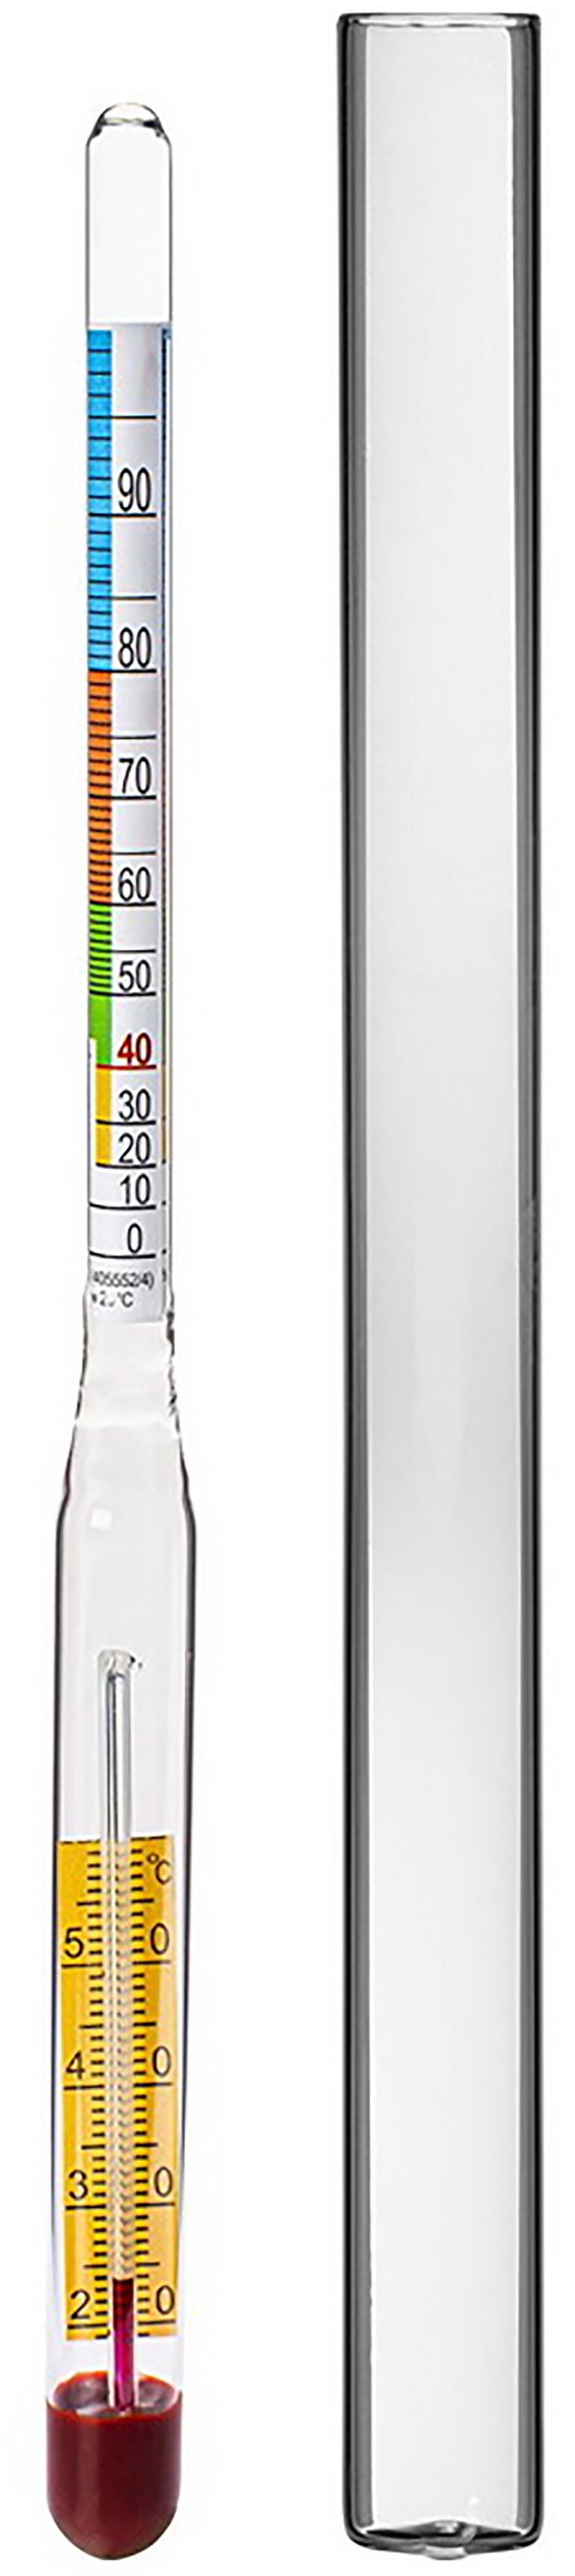 alkoholmetr s teploměrem 0-95% 0.04 Kg MAXMIX Sklad14 330391 17